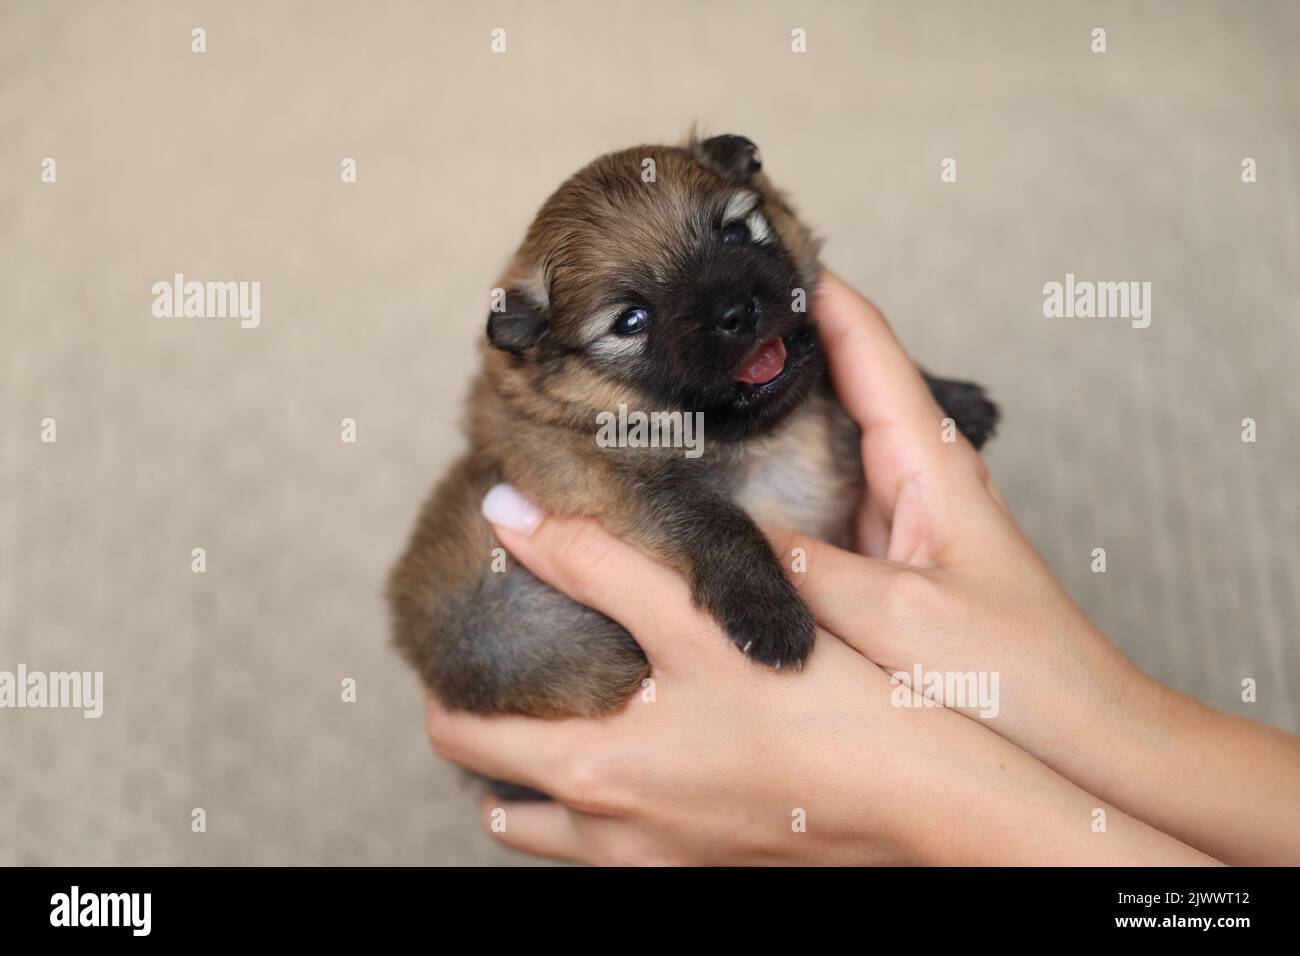 la ragazza tiene nelle sue mani un cucciolo neonato di uno shpiz pomerano Foto Stock